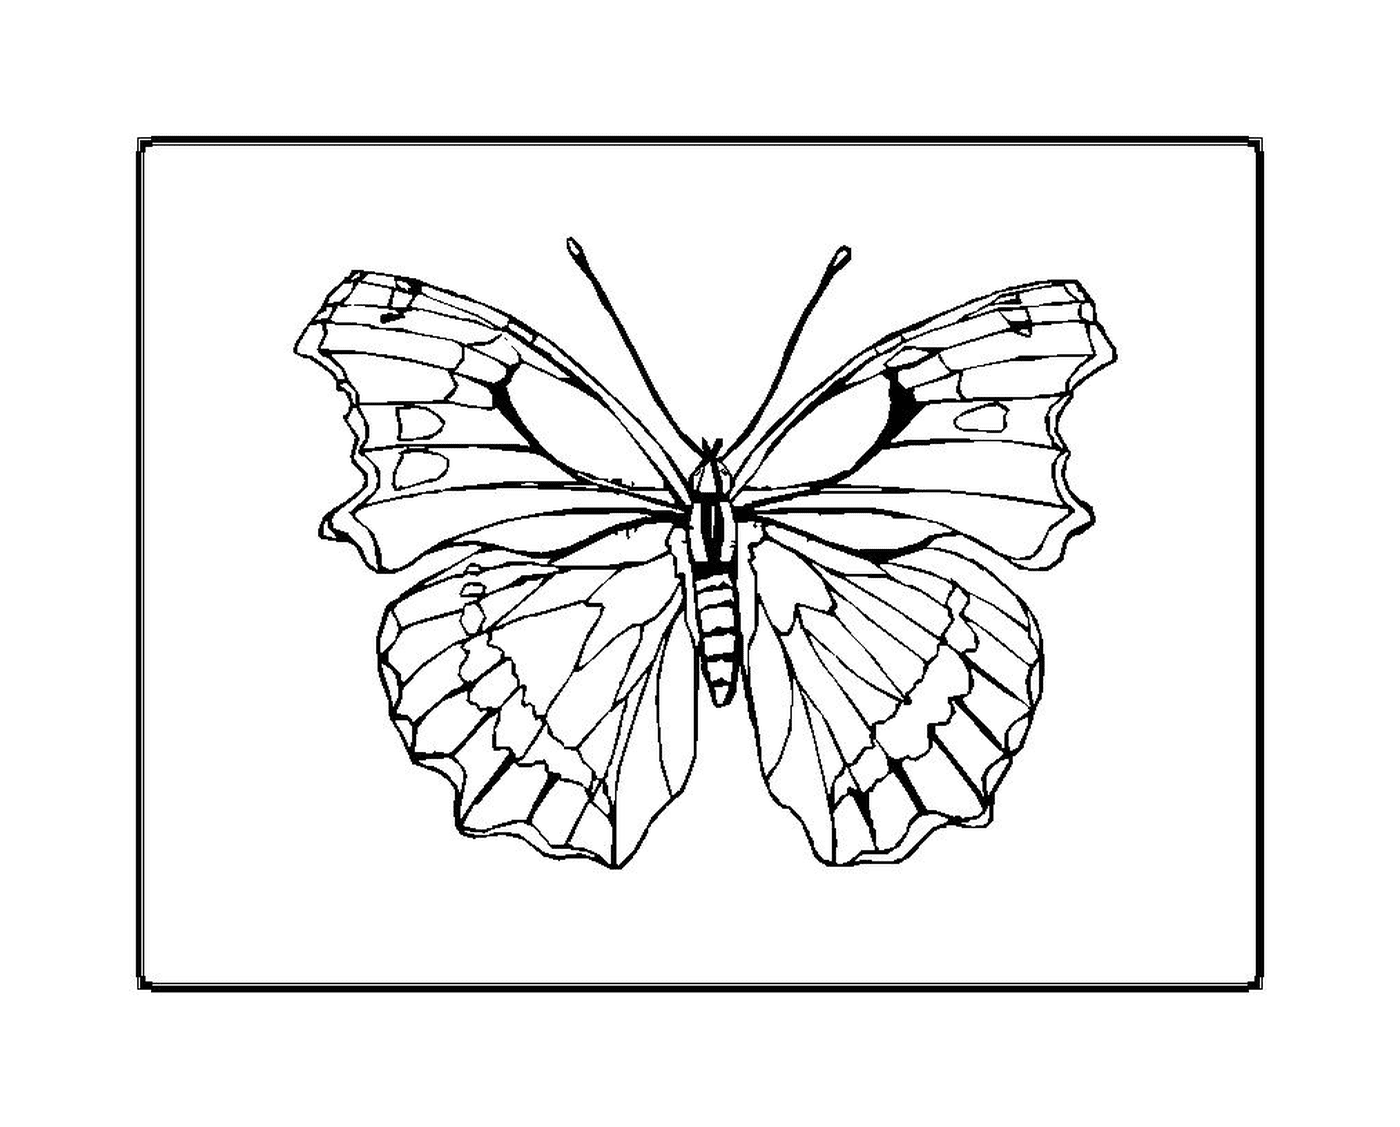  borboleta delicada e graciosa 